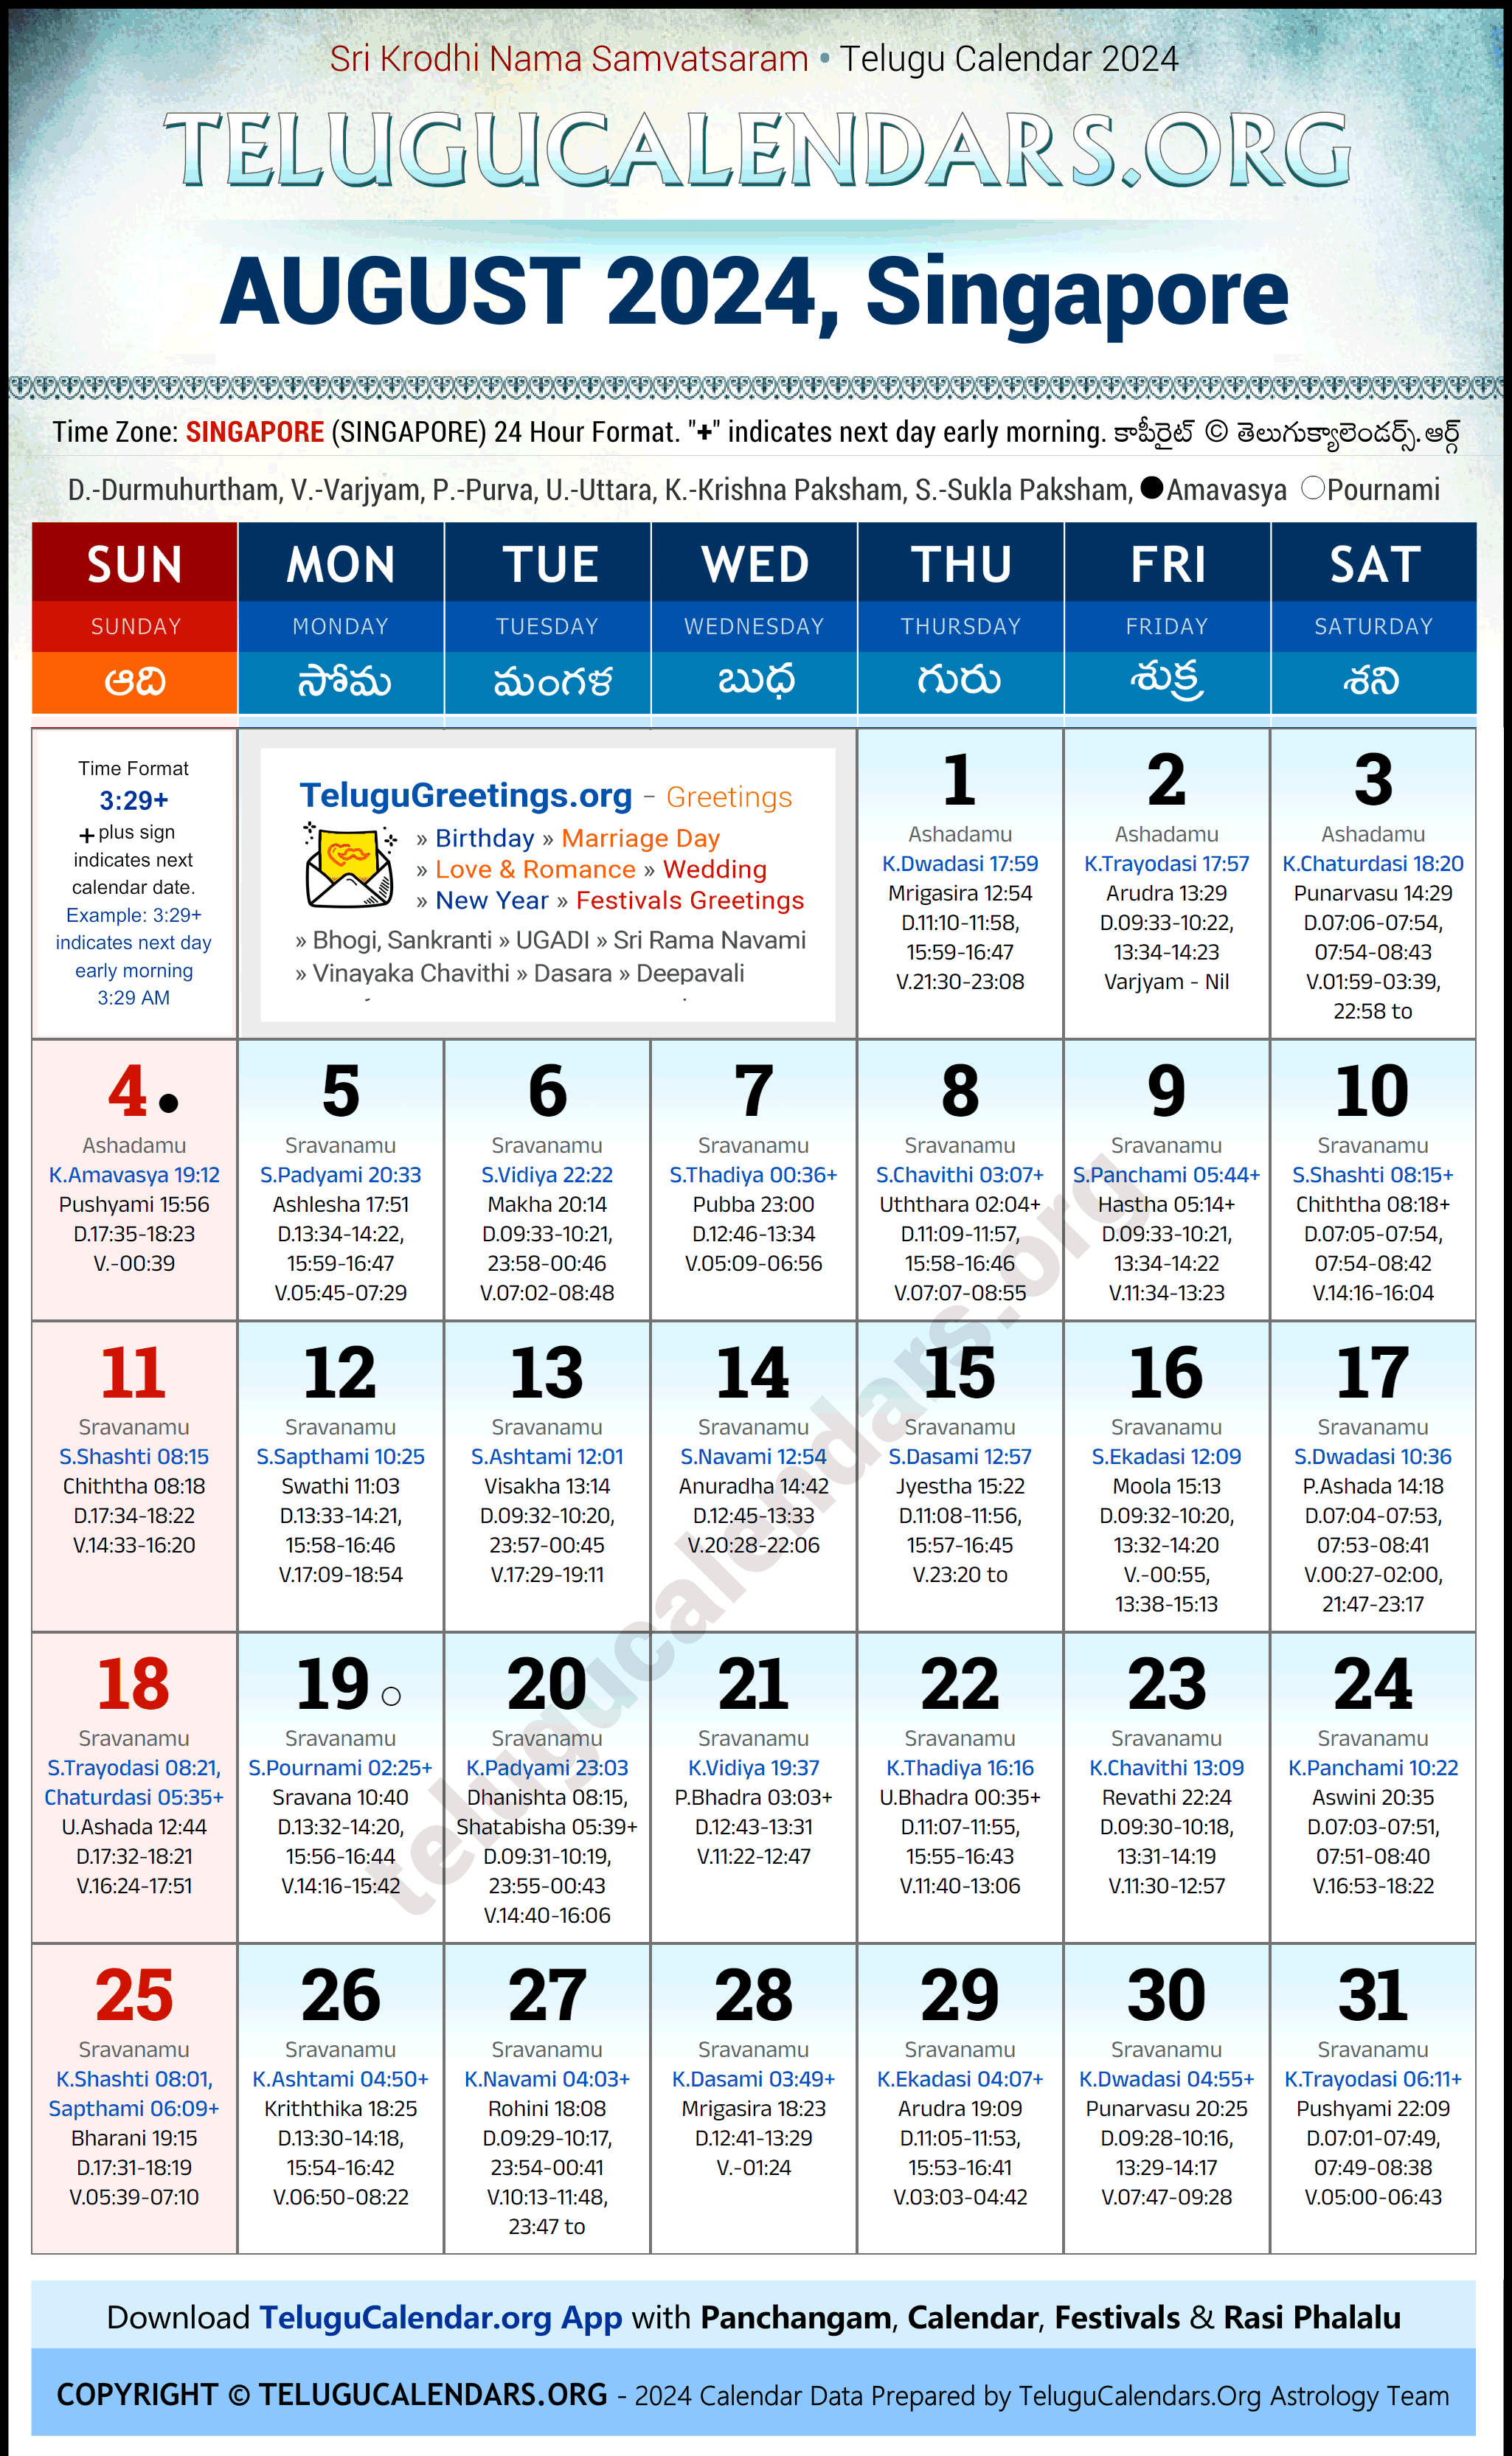 Telugu Calendar 2024 August Festivals for Singapore